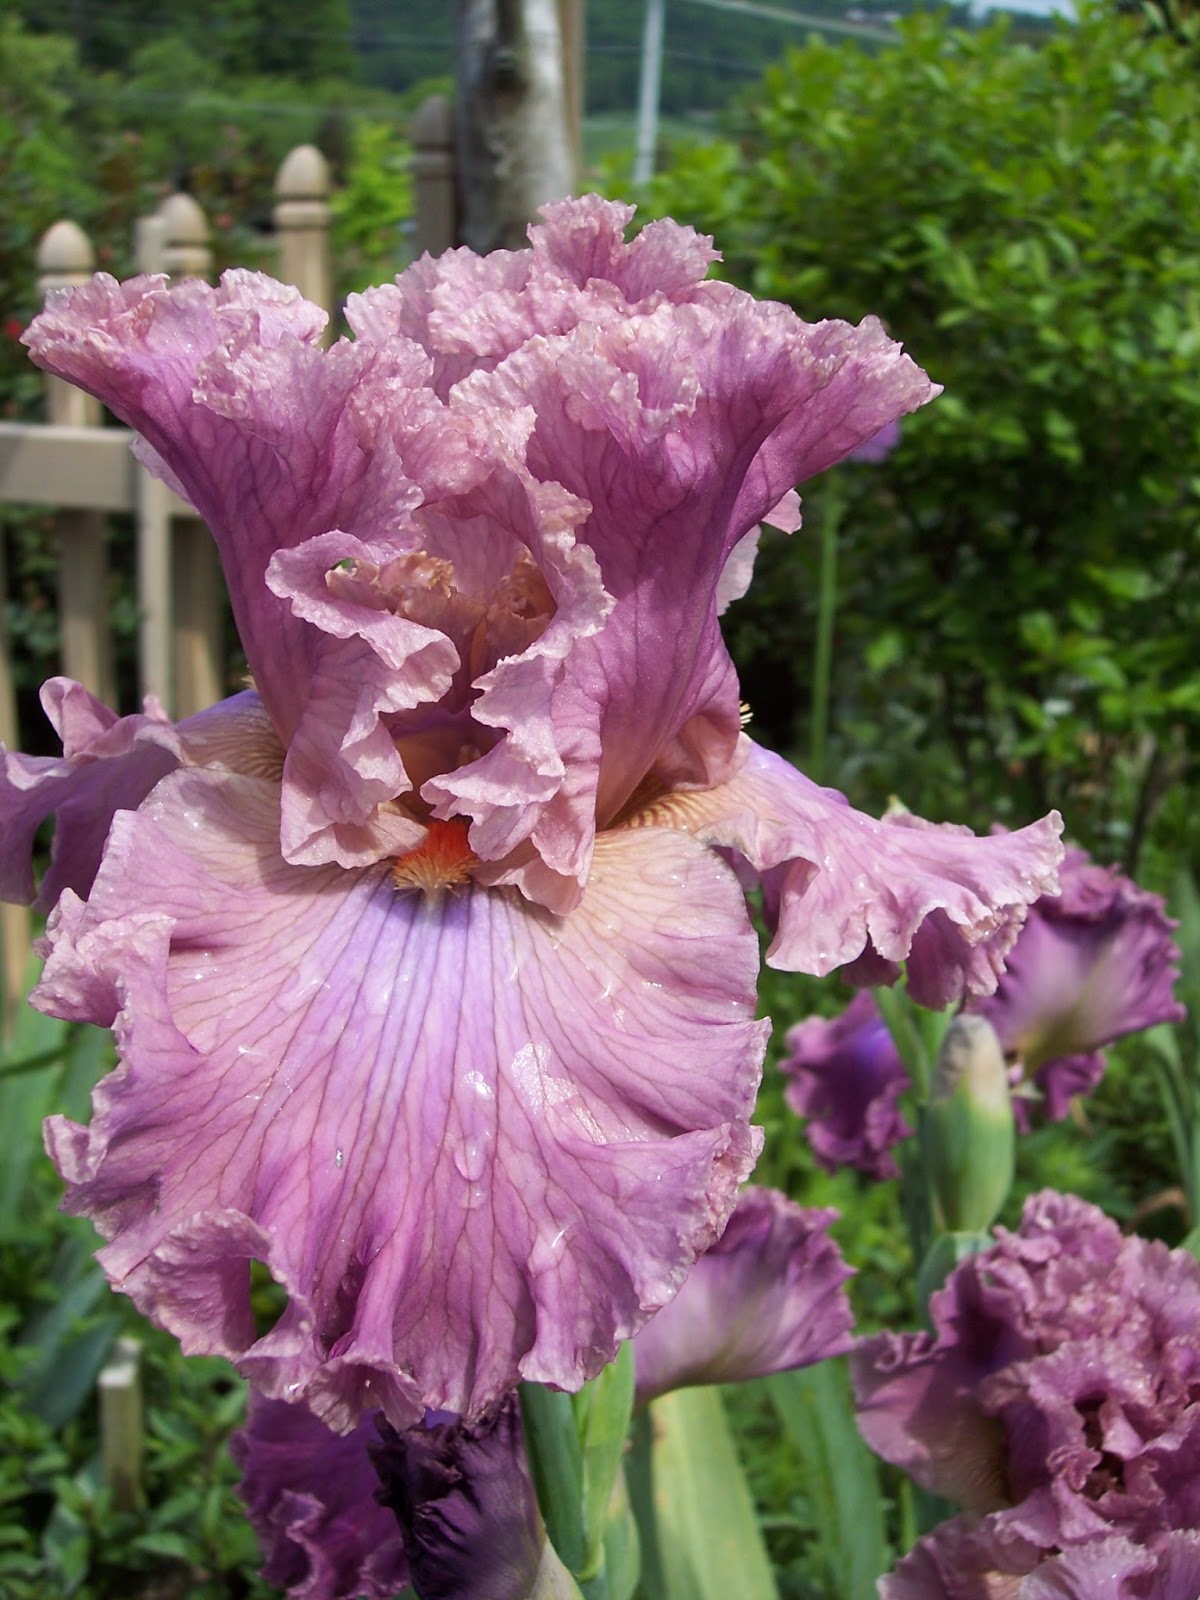 Photos of Beaded iris in a Fantasy Garden setting